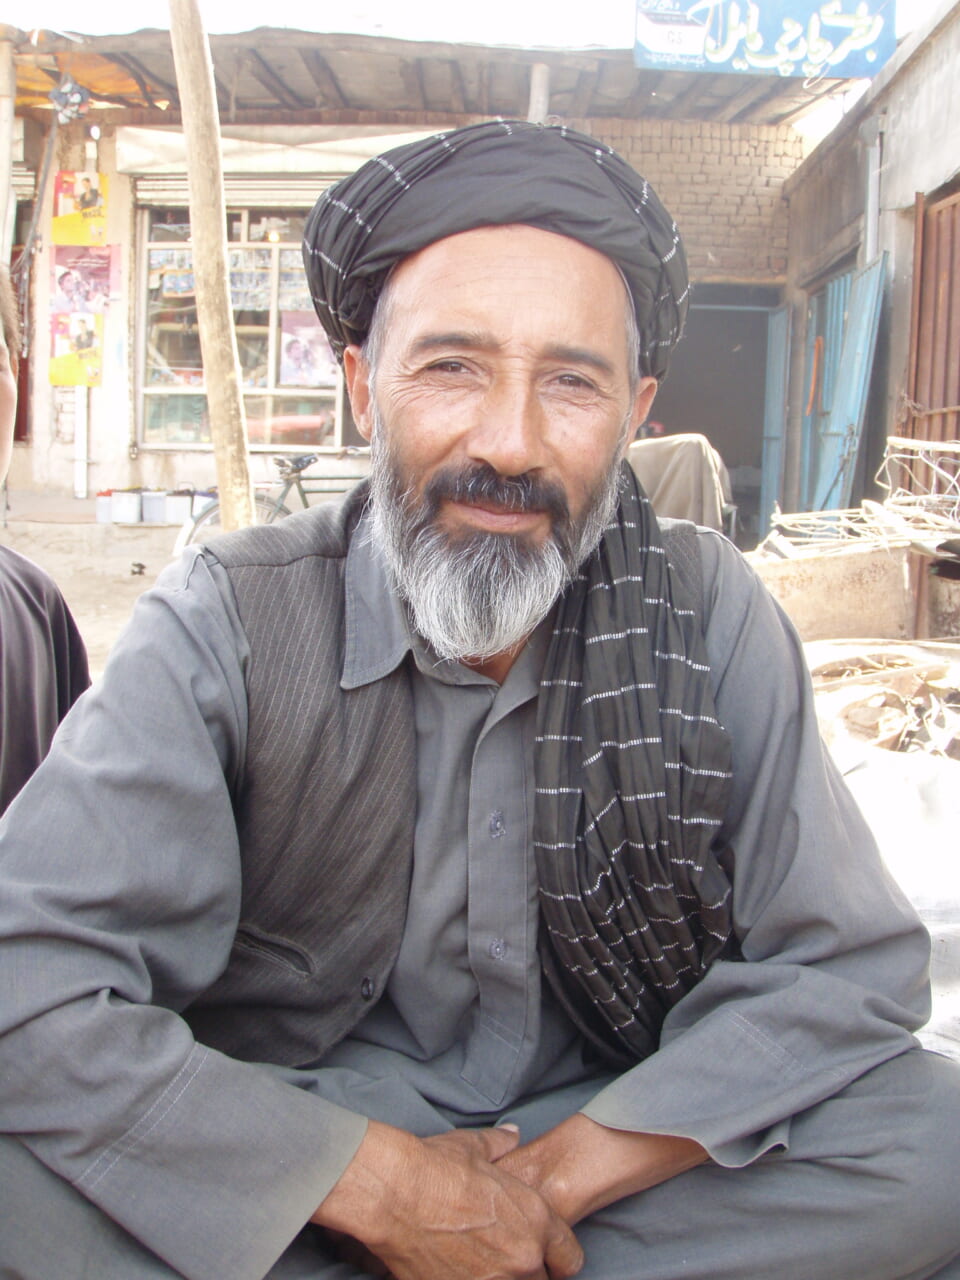 「アフガニスタンには、いい表情をした誠実な人が多い」と高野さん。